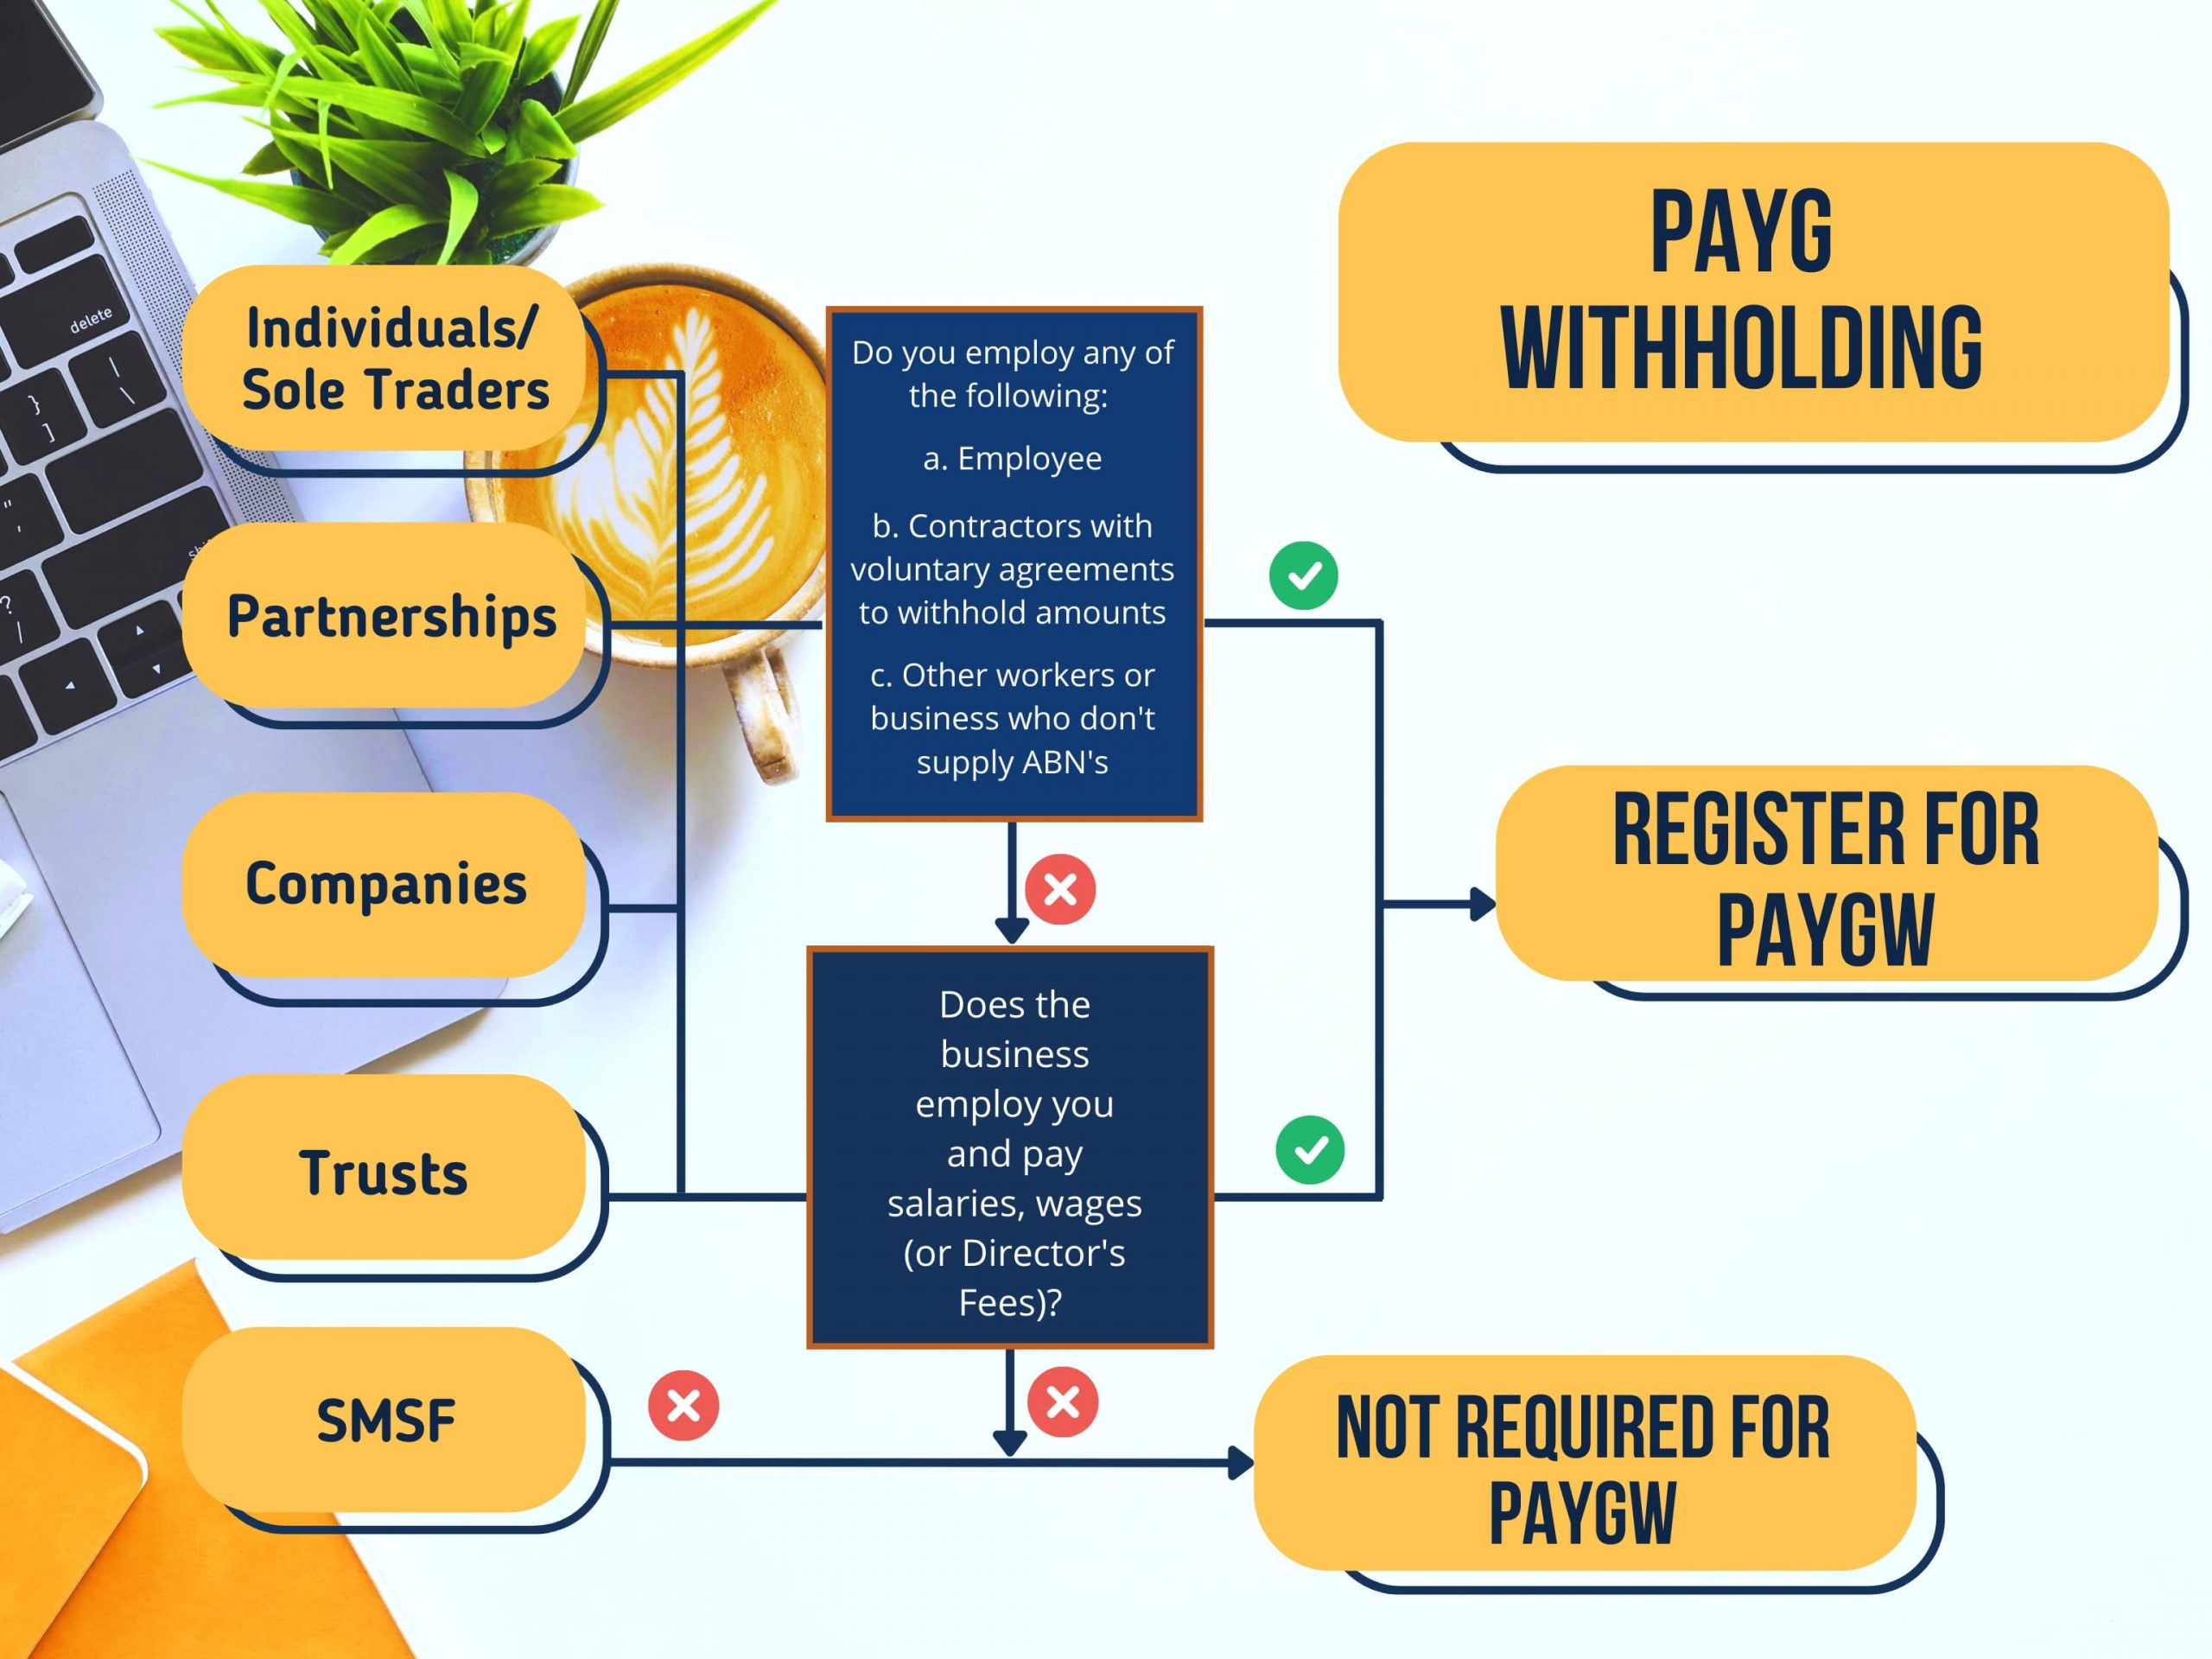 Register for PAYG Withholding